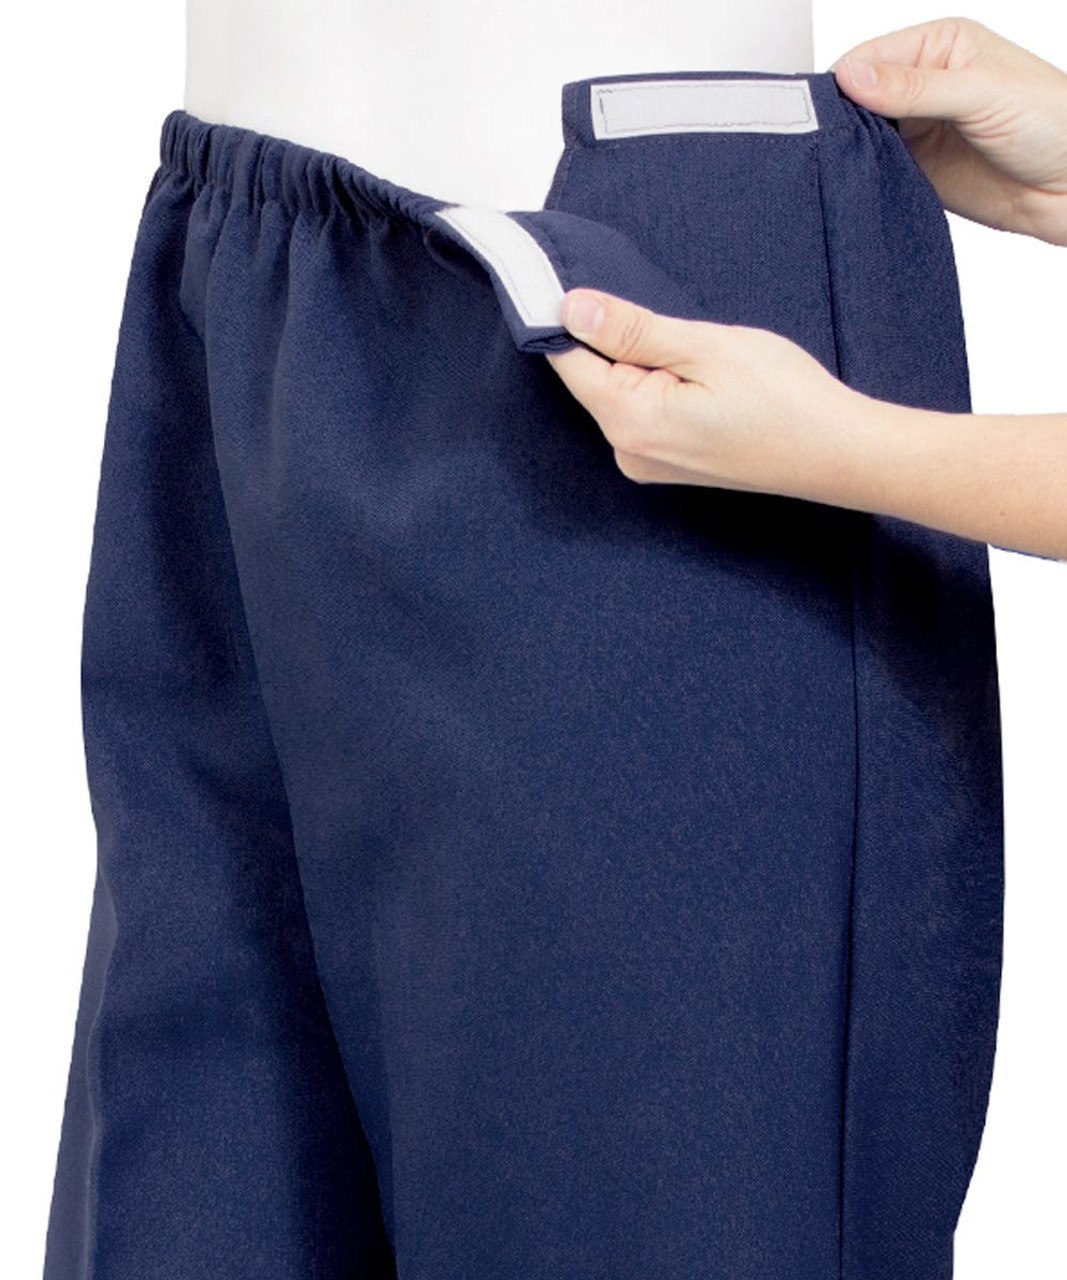 Silverts SV23120 Soft Knit Easy Access Pants for Women Navy, Size=2XL, SV23120-SV3-2XL